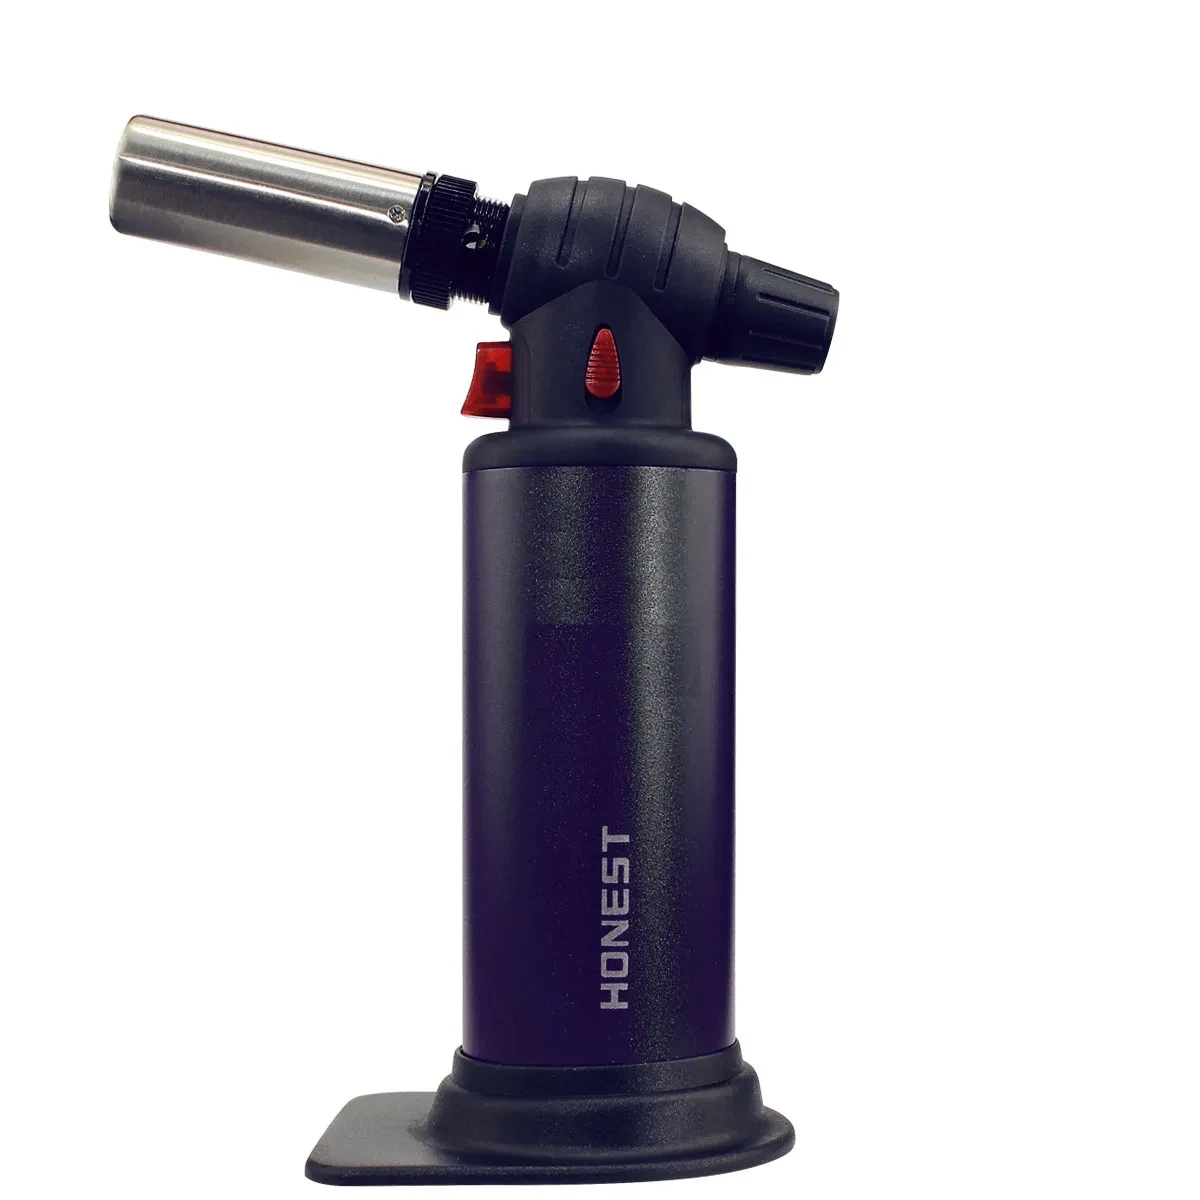 Honest Jet Flame Torch 2 Fire Mode Gas Lighter BCH517